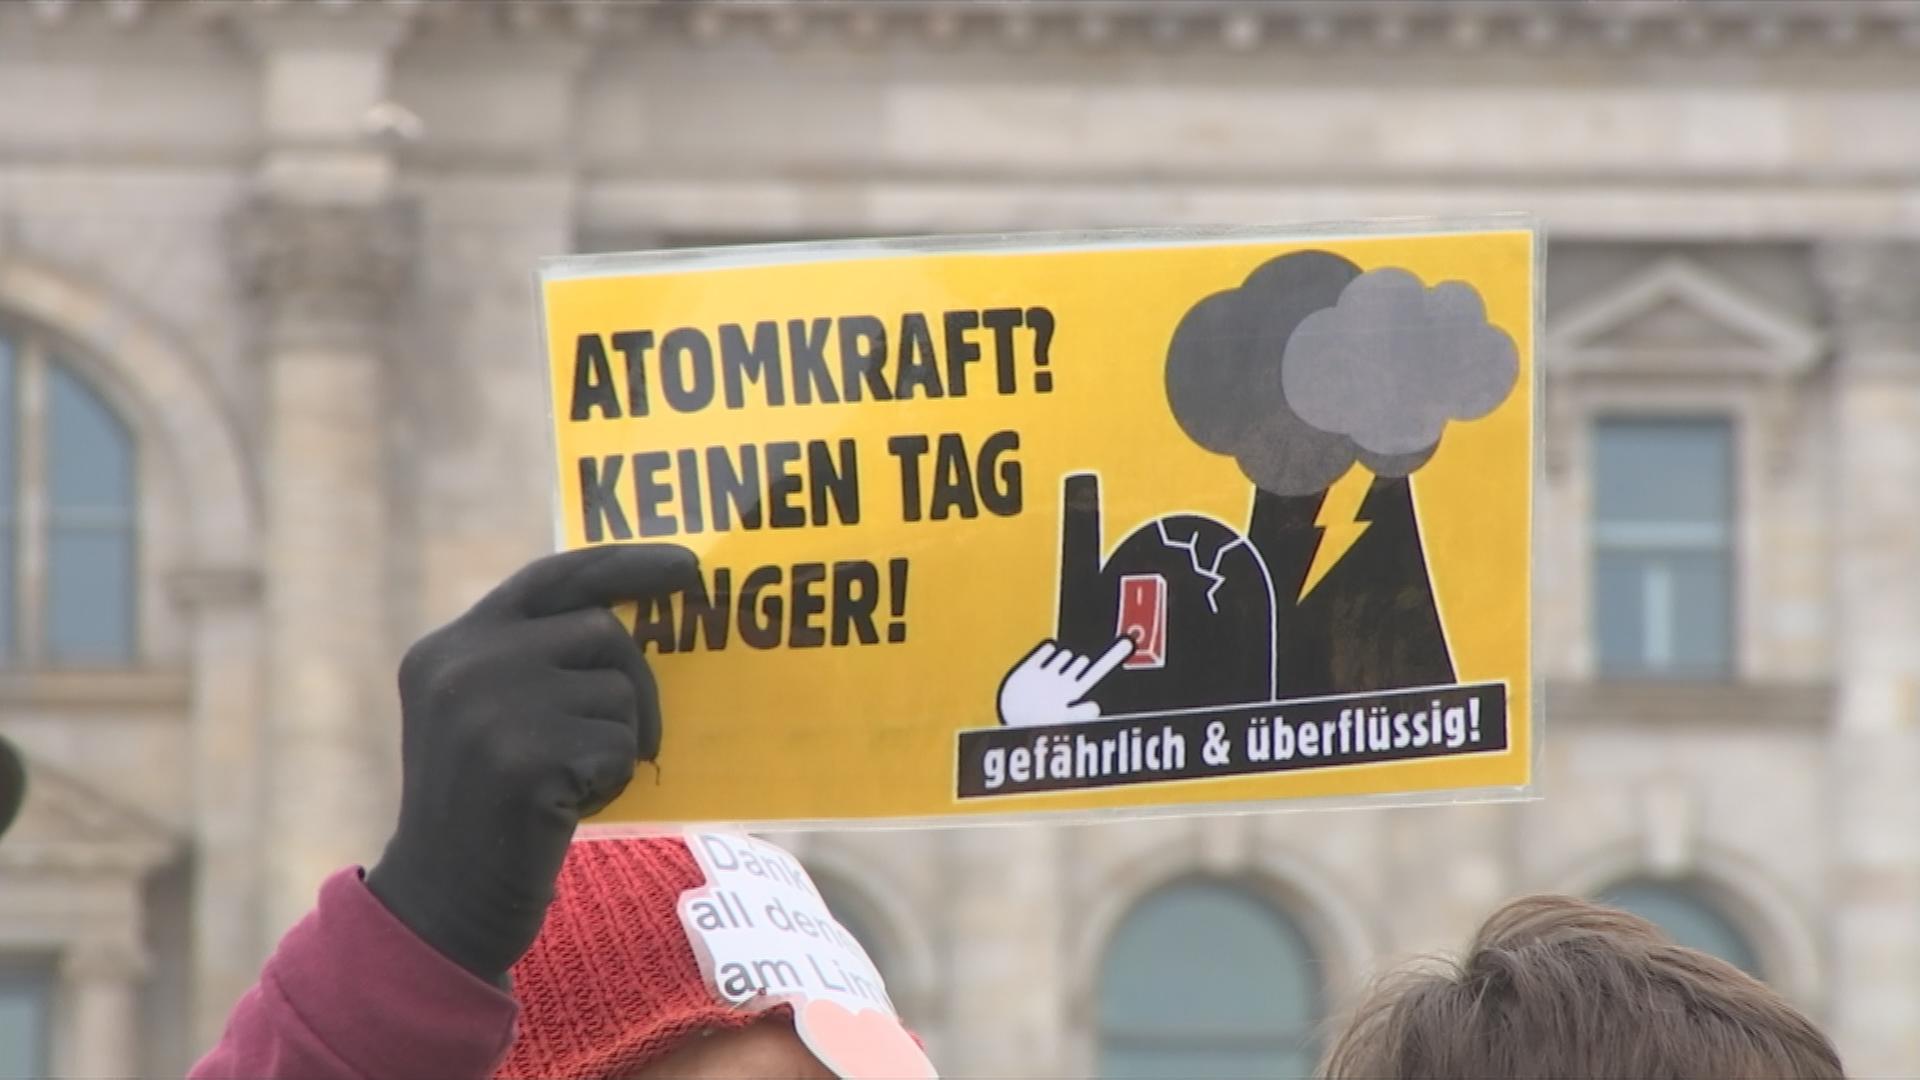 Atomkraftgegner hält ein Schild hoch, auf dem ein Atomkraftwerk zu sehen ist, mit dem Slogan "Atomkraft? Keinen Tag länger!"